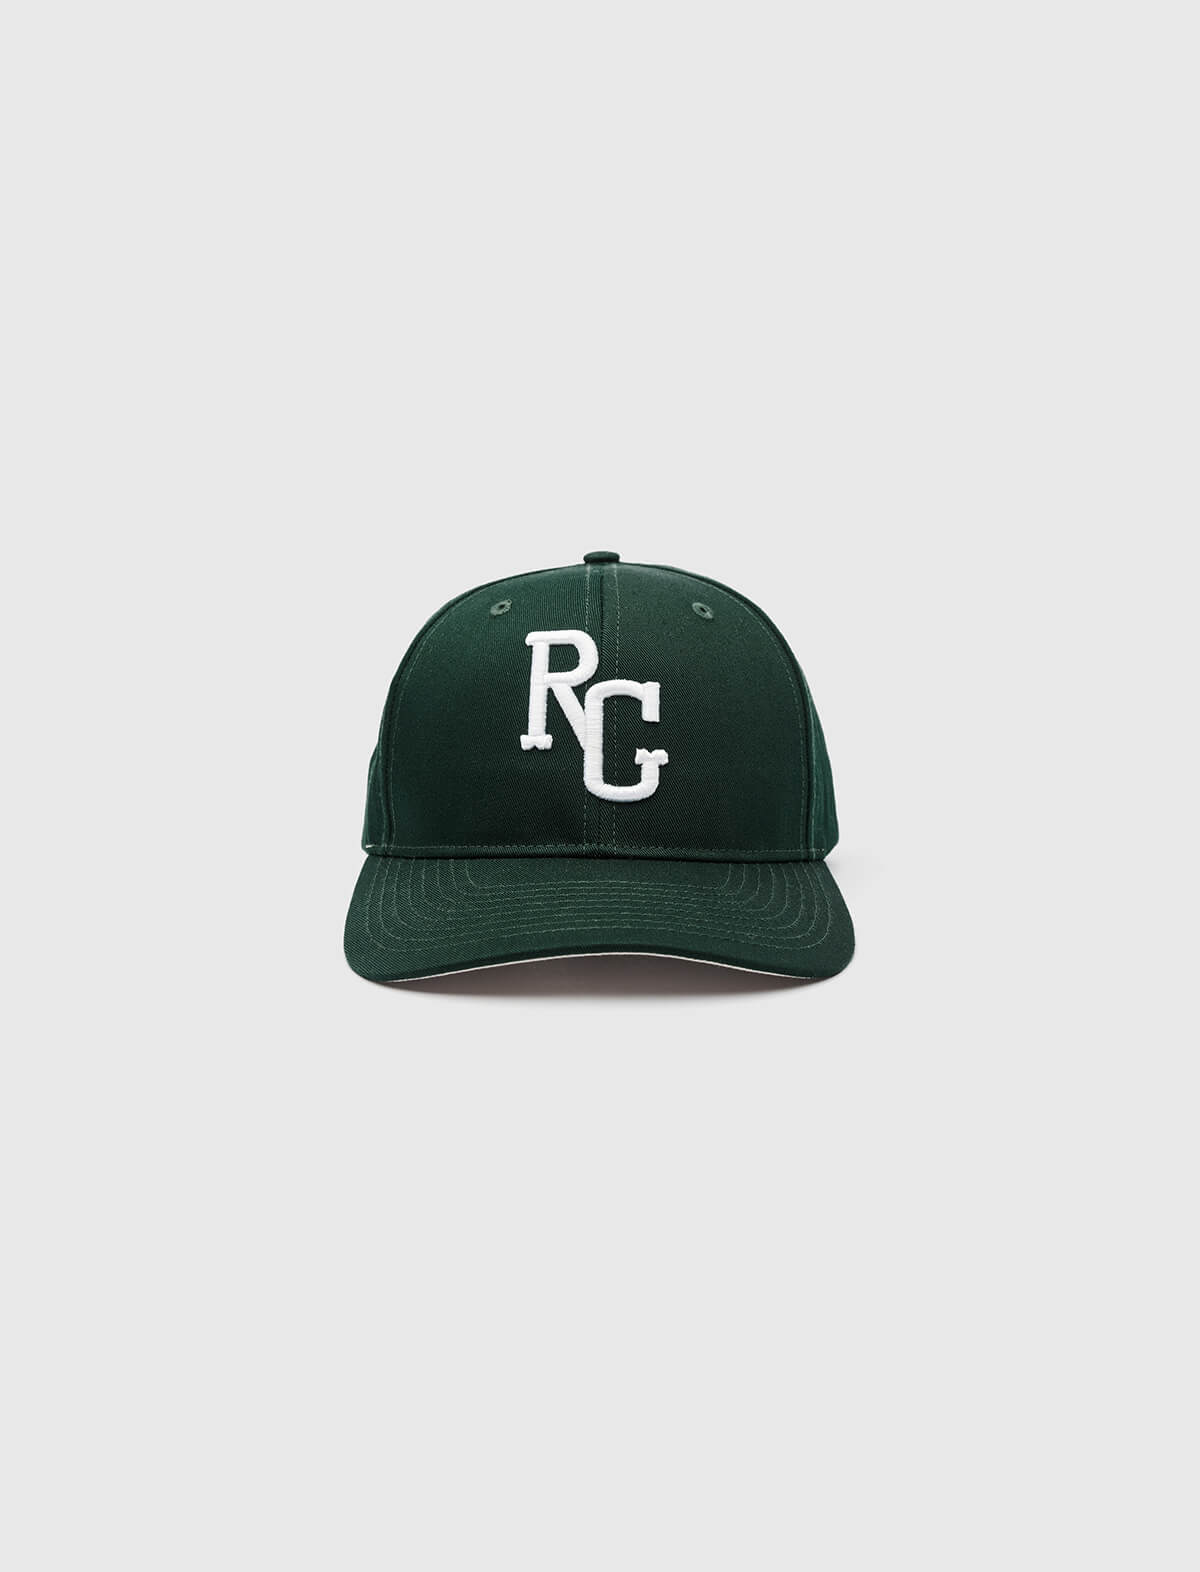 RADDA GOLF RG Hat in Forest